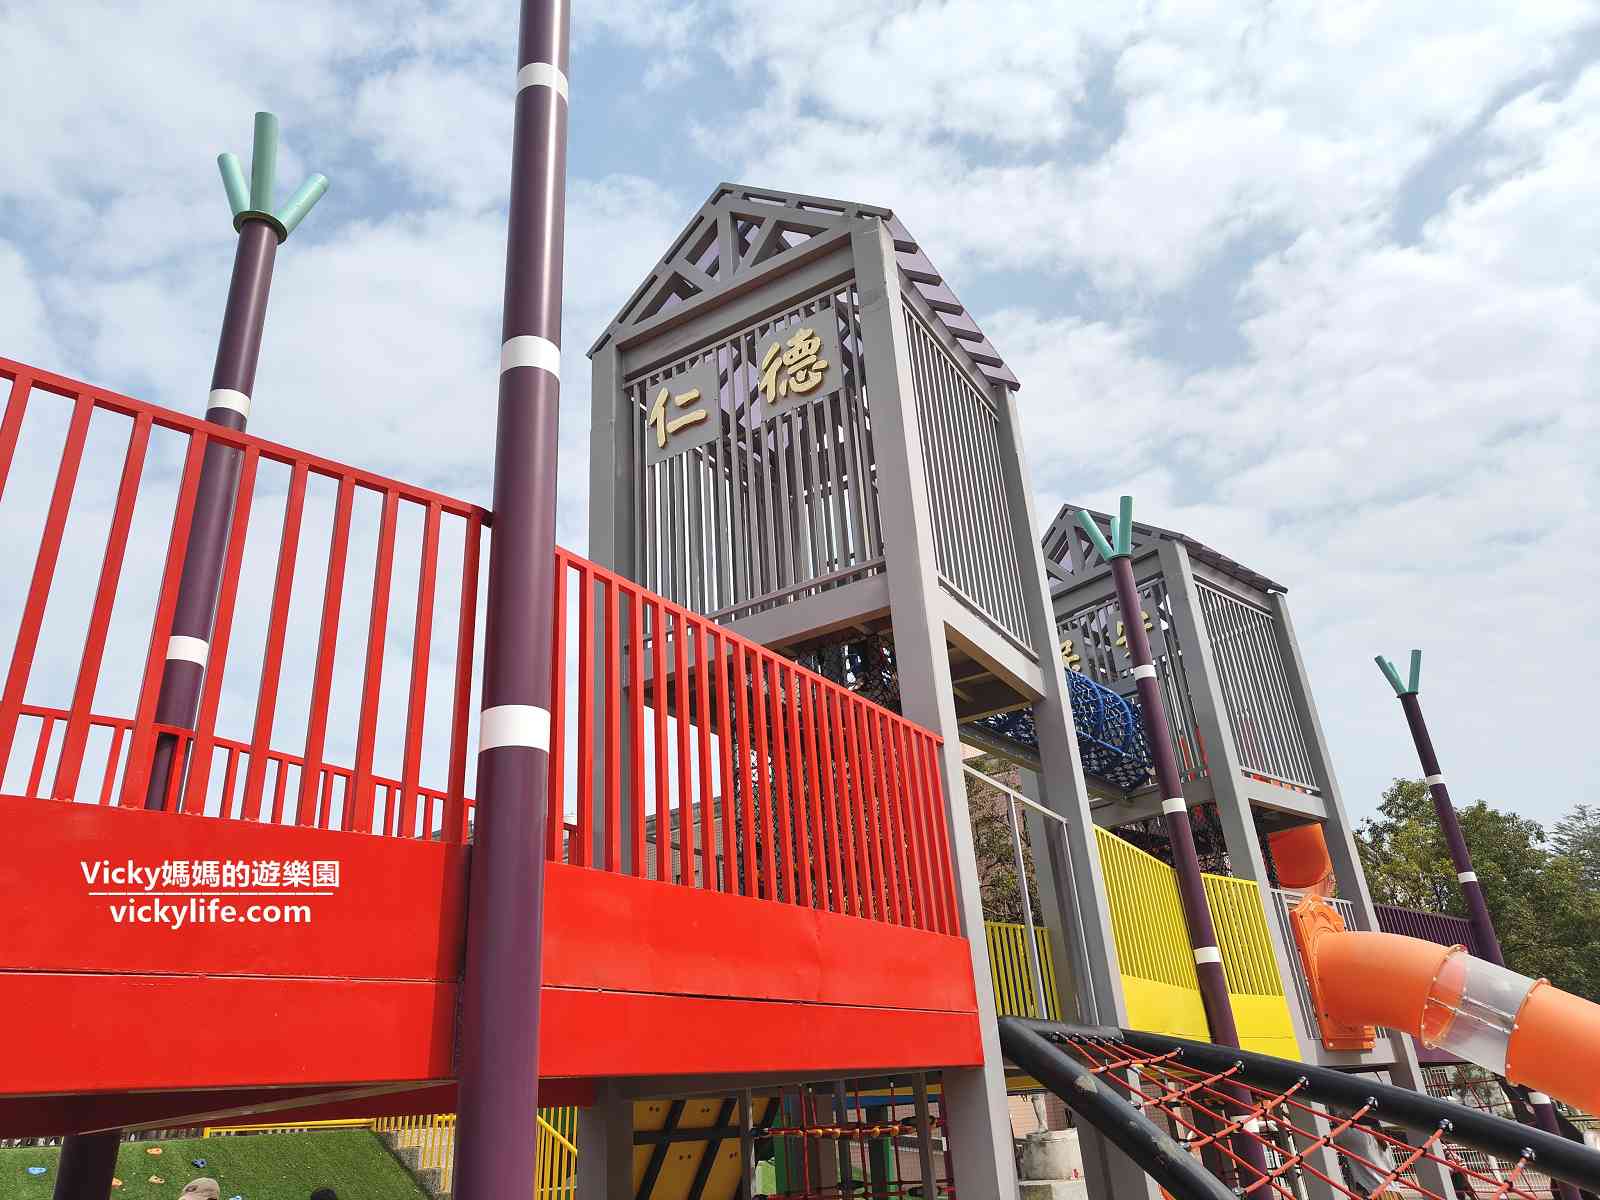 仁德運動公園 特色遊戲場：以火車為主題的遊戲場，顏色繽紛吸睛，多款繩索遊具可挑戰